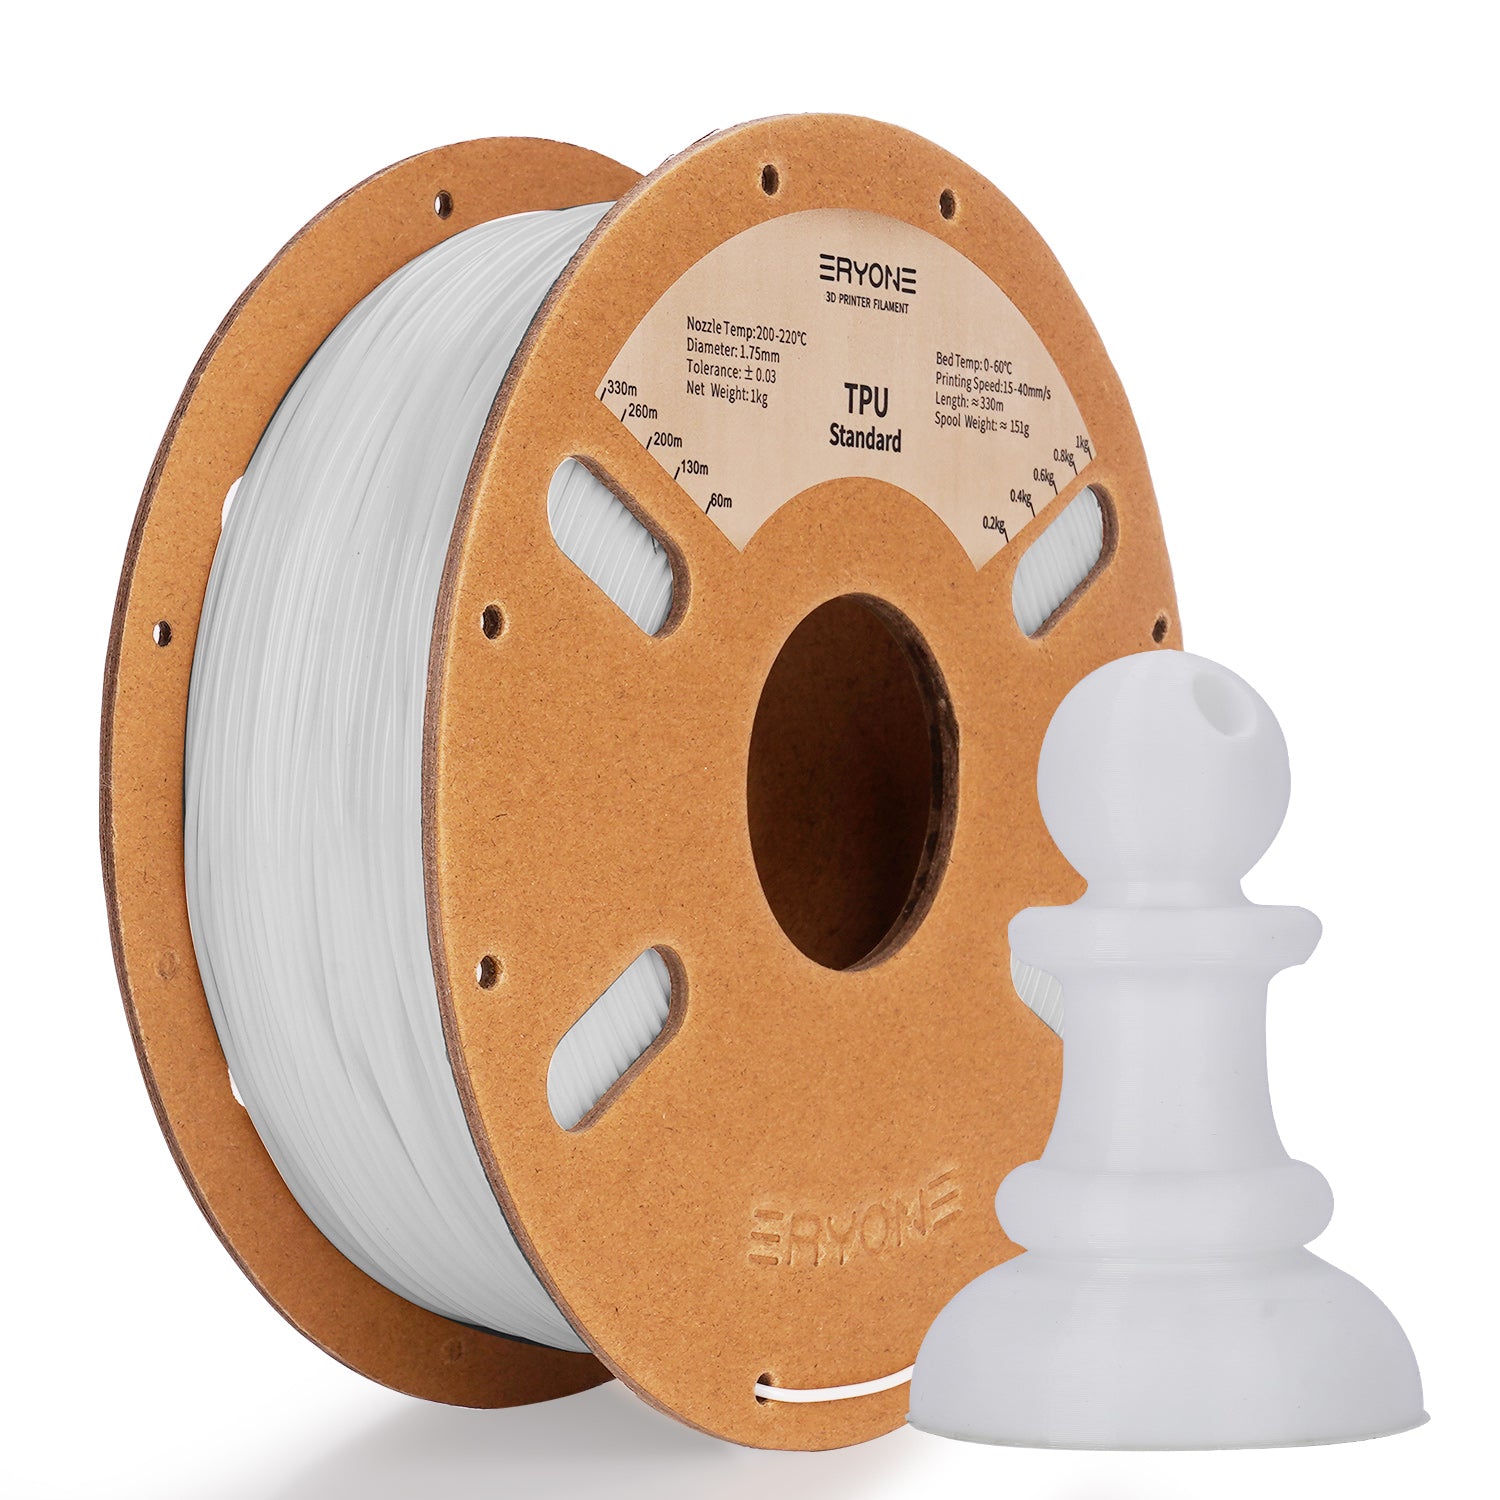 Filament pour imprimante 3D ERYONE 1.75mm TPU, précision dimensionnelle +/- 0.05 mm, 0.5kg&1kg  (1.1 LB) / Bobine